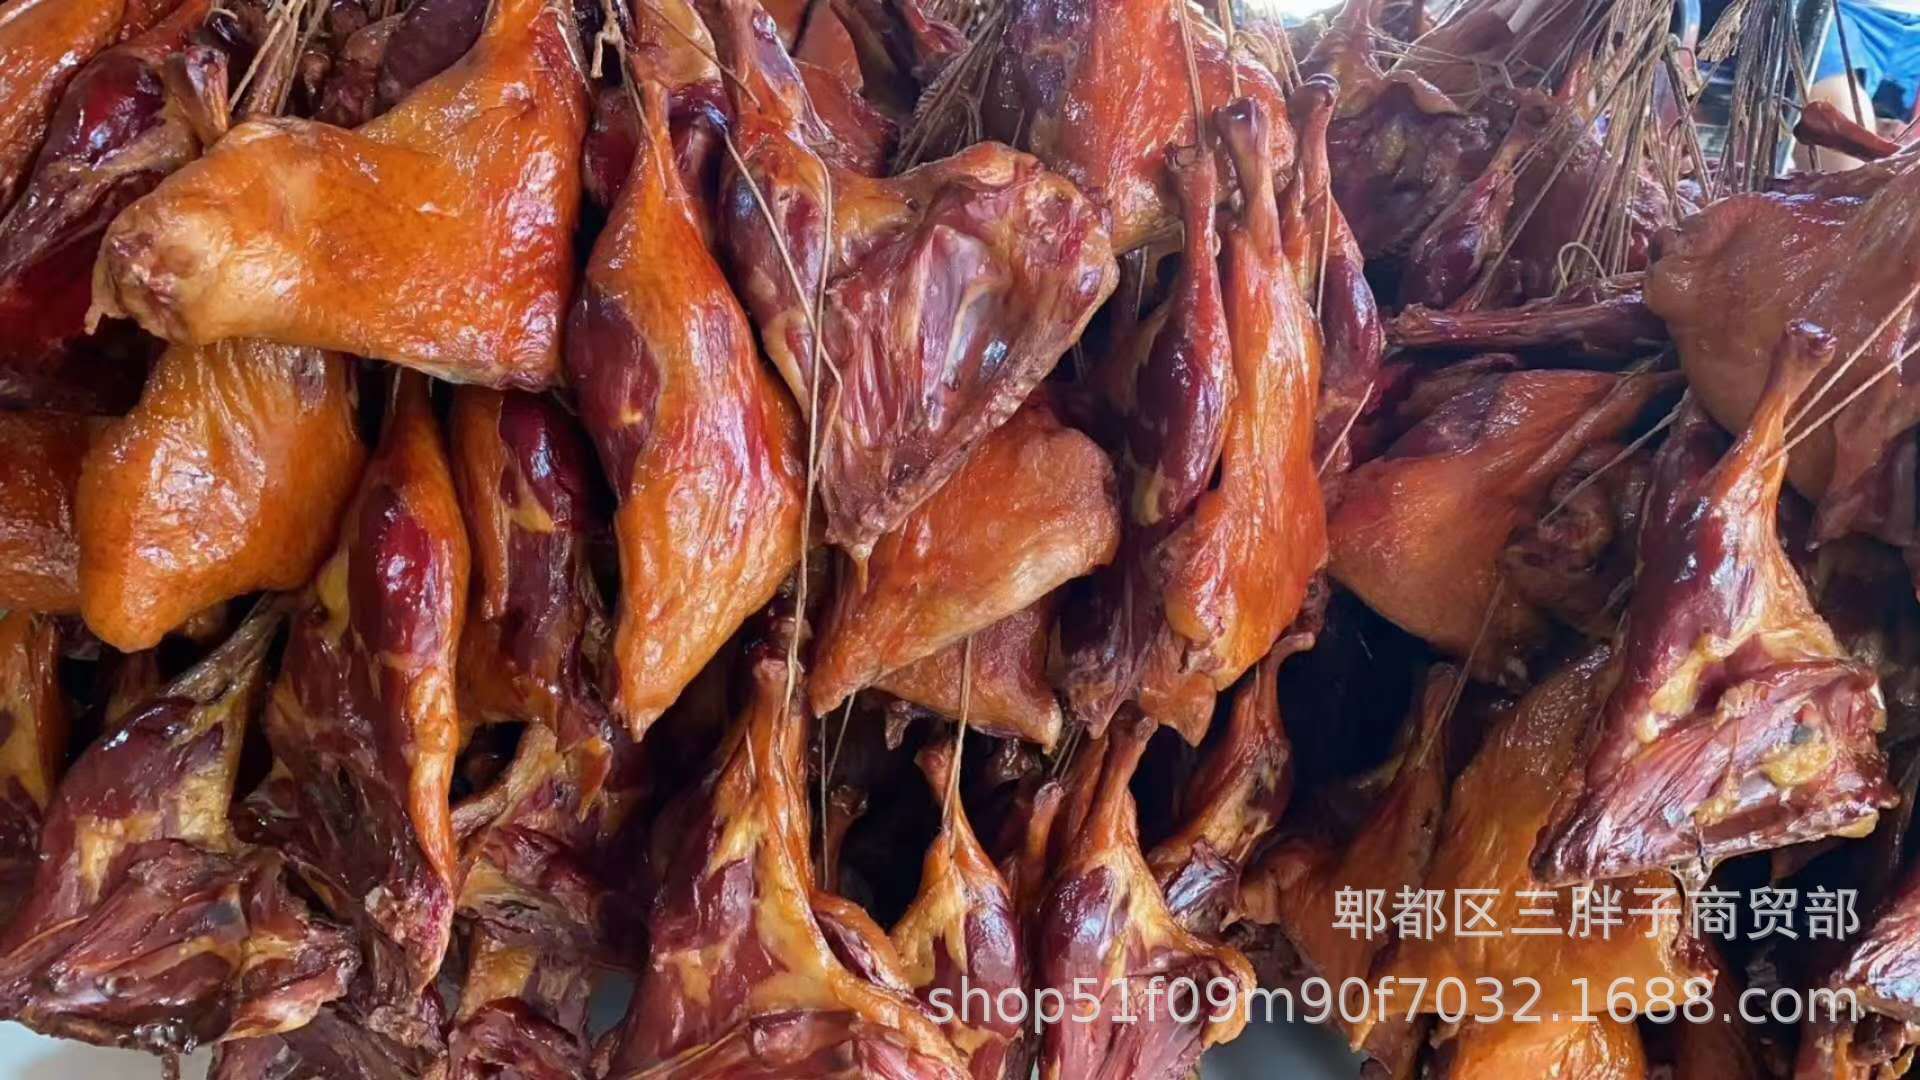 塘栖熏鸭-名特食品图谱-图片